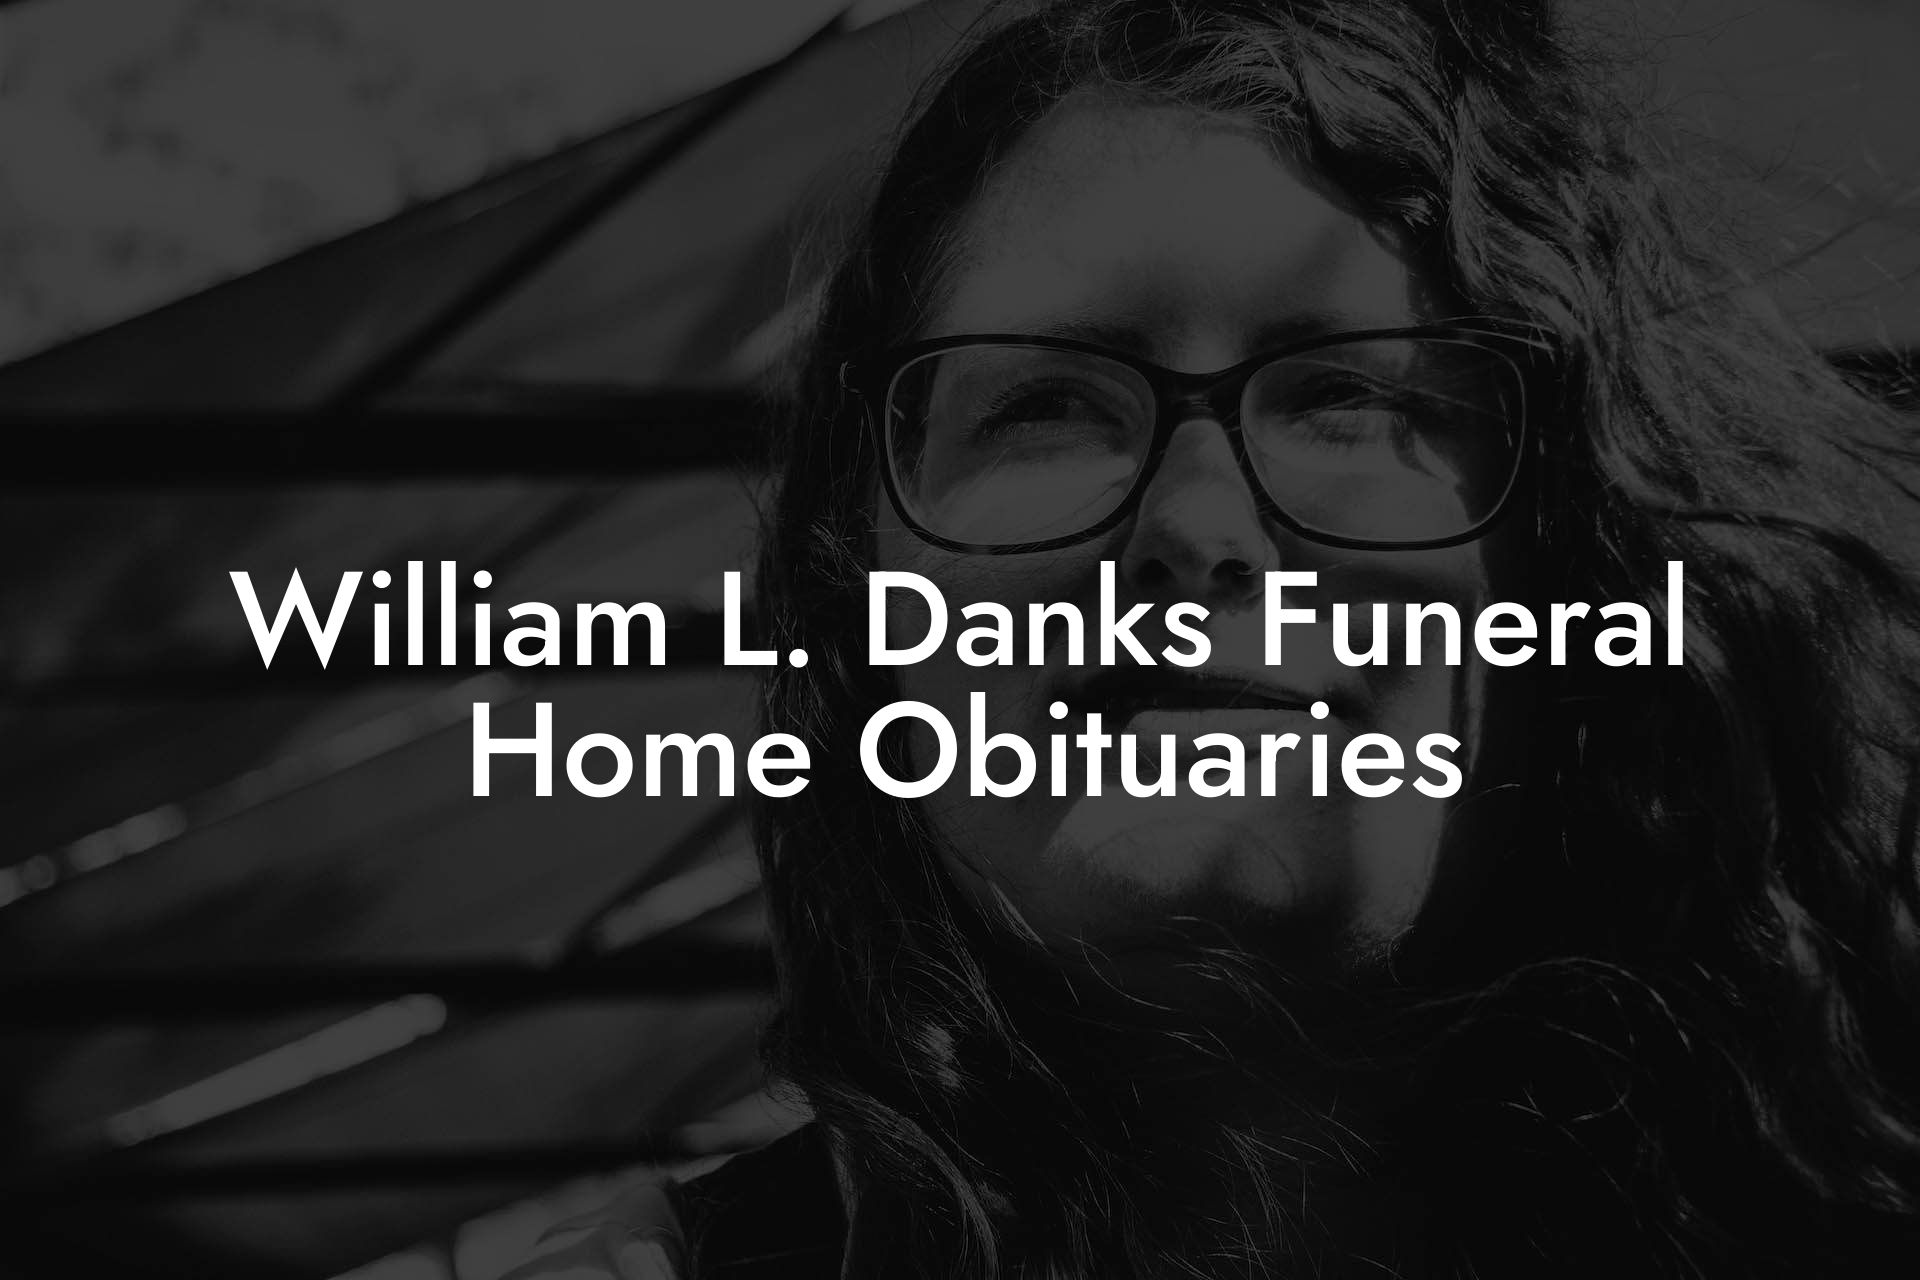 William L. Danks Funeral Home Obituaries